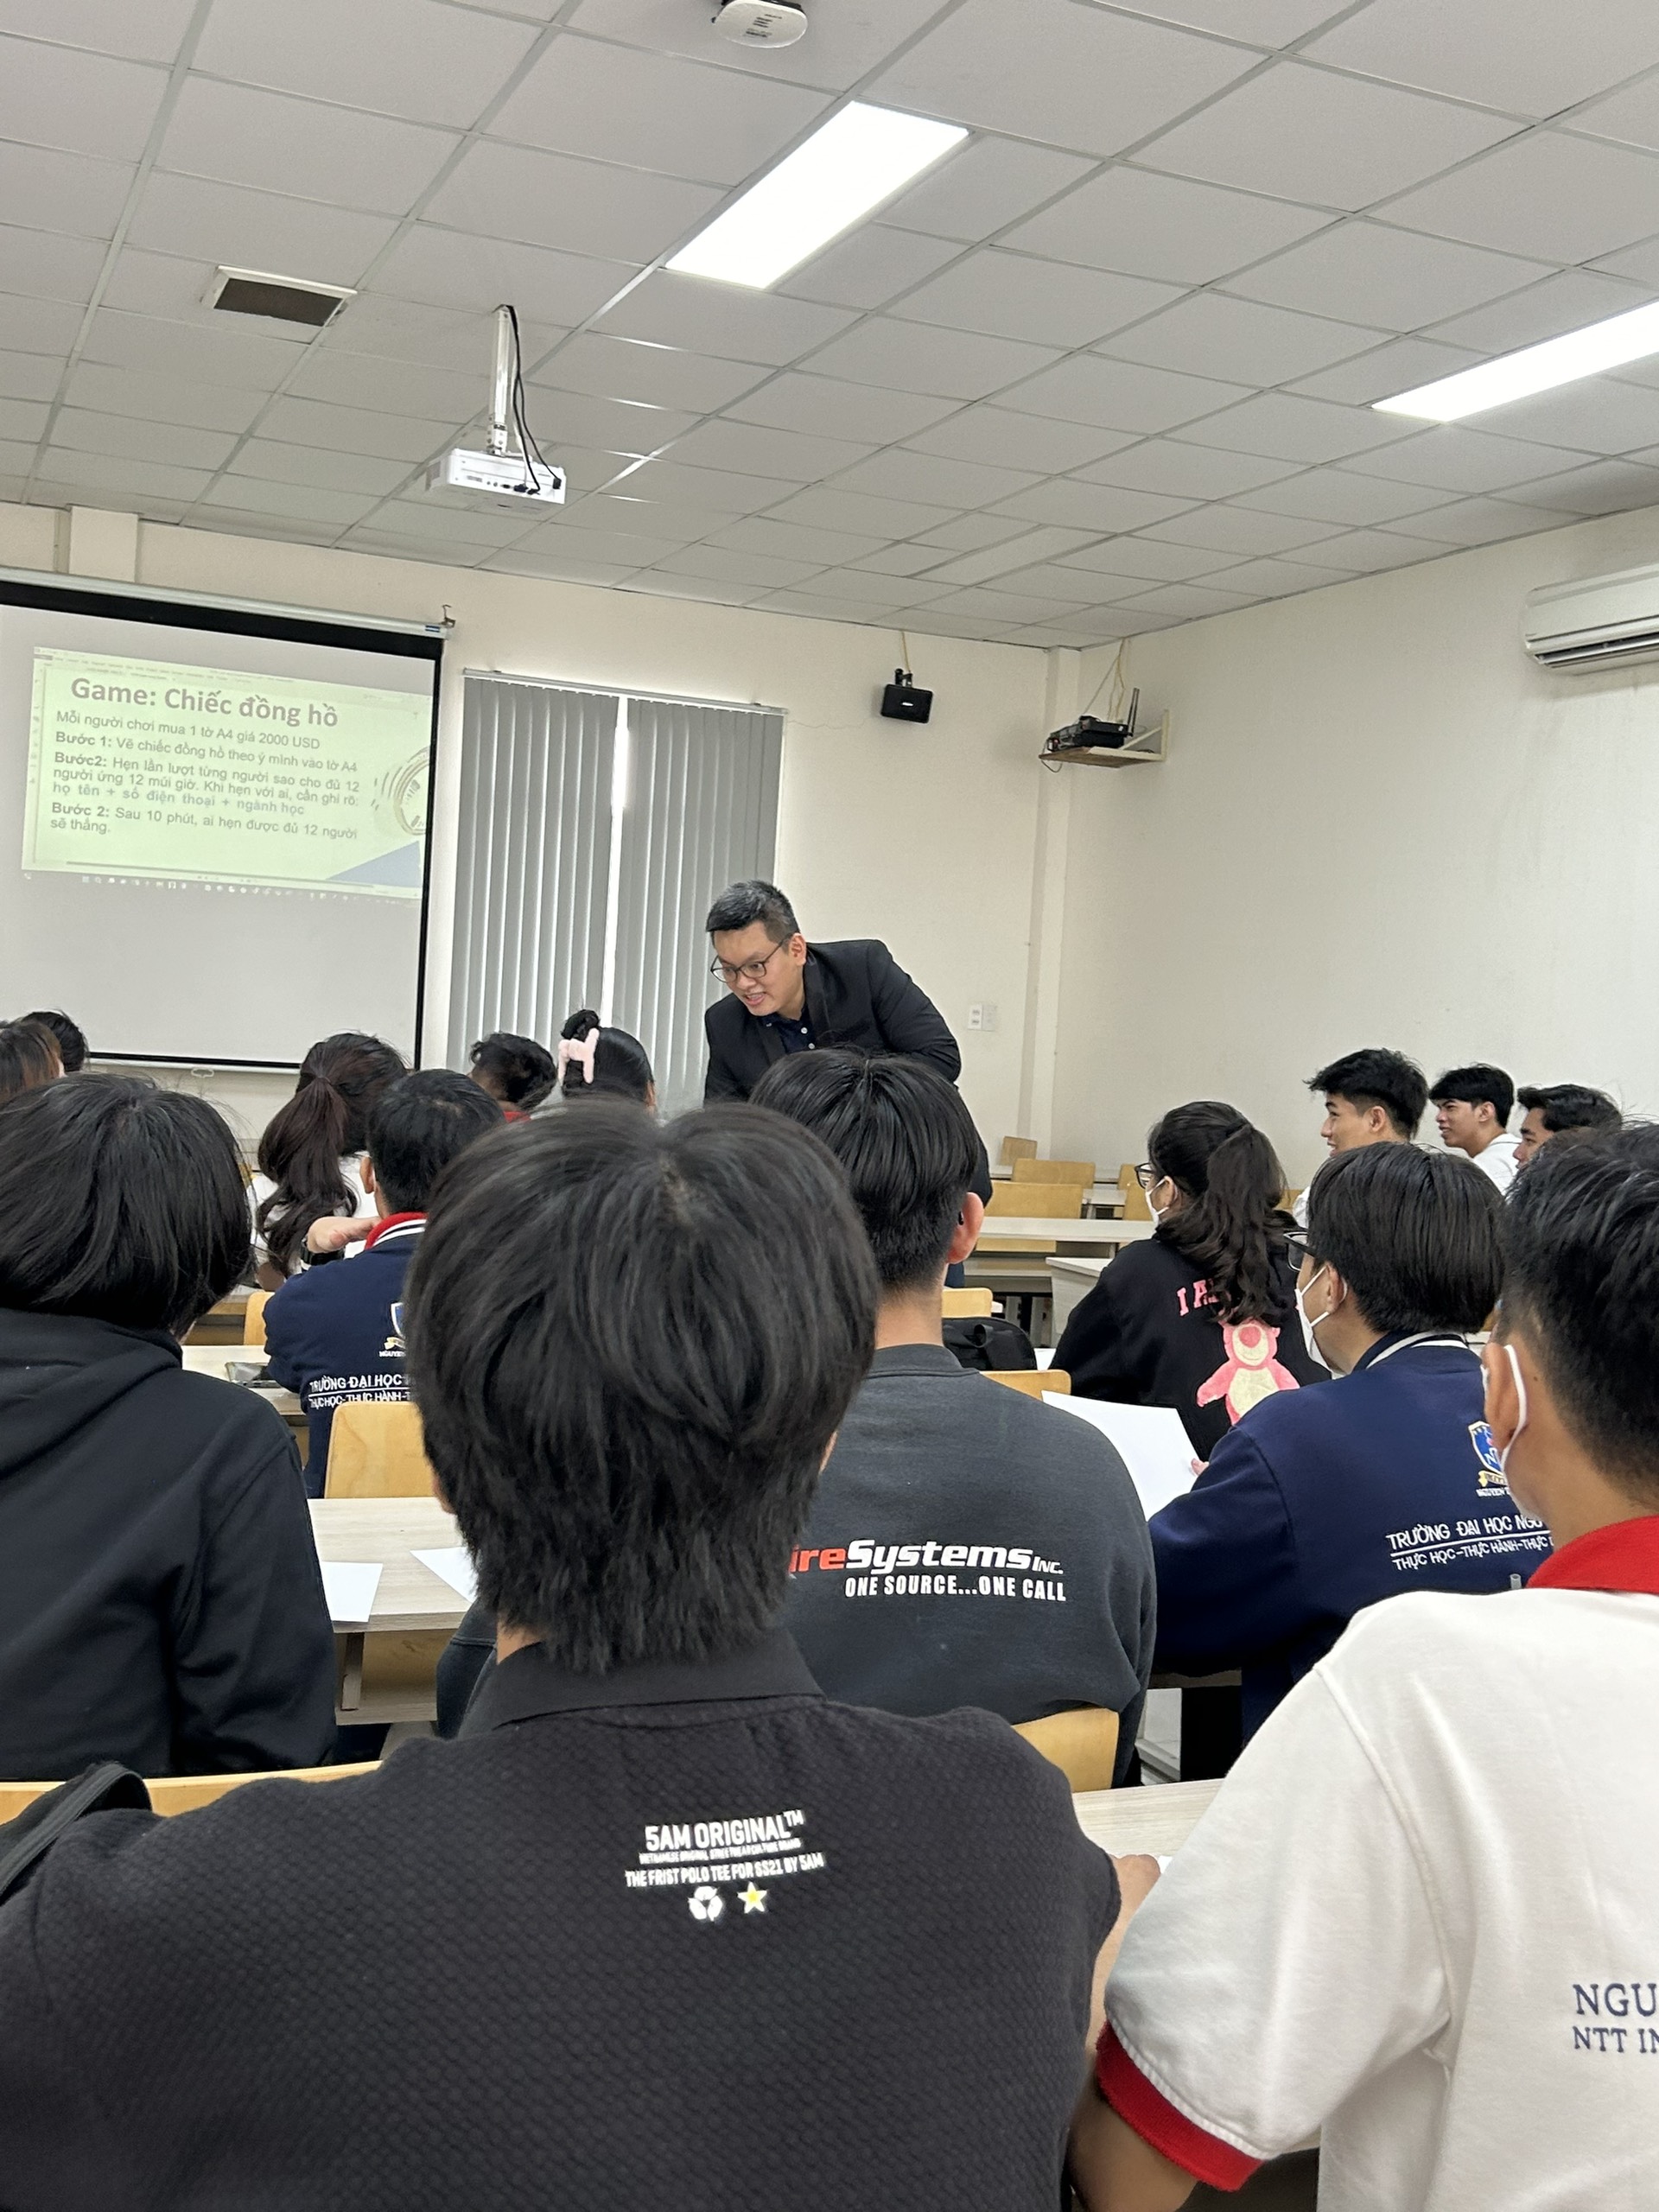 Sinh viên NIIE trong môn học Khởi nghiệp theo phương pháp gamification, dưới sự hướng dẫn của giảng viên ThS. Tạ Hữu Hiển